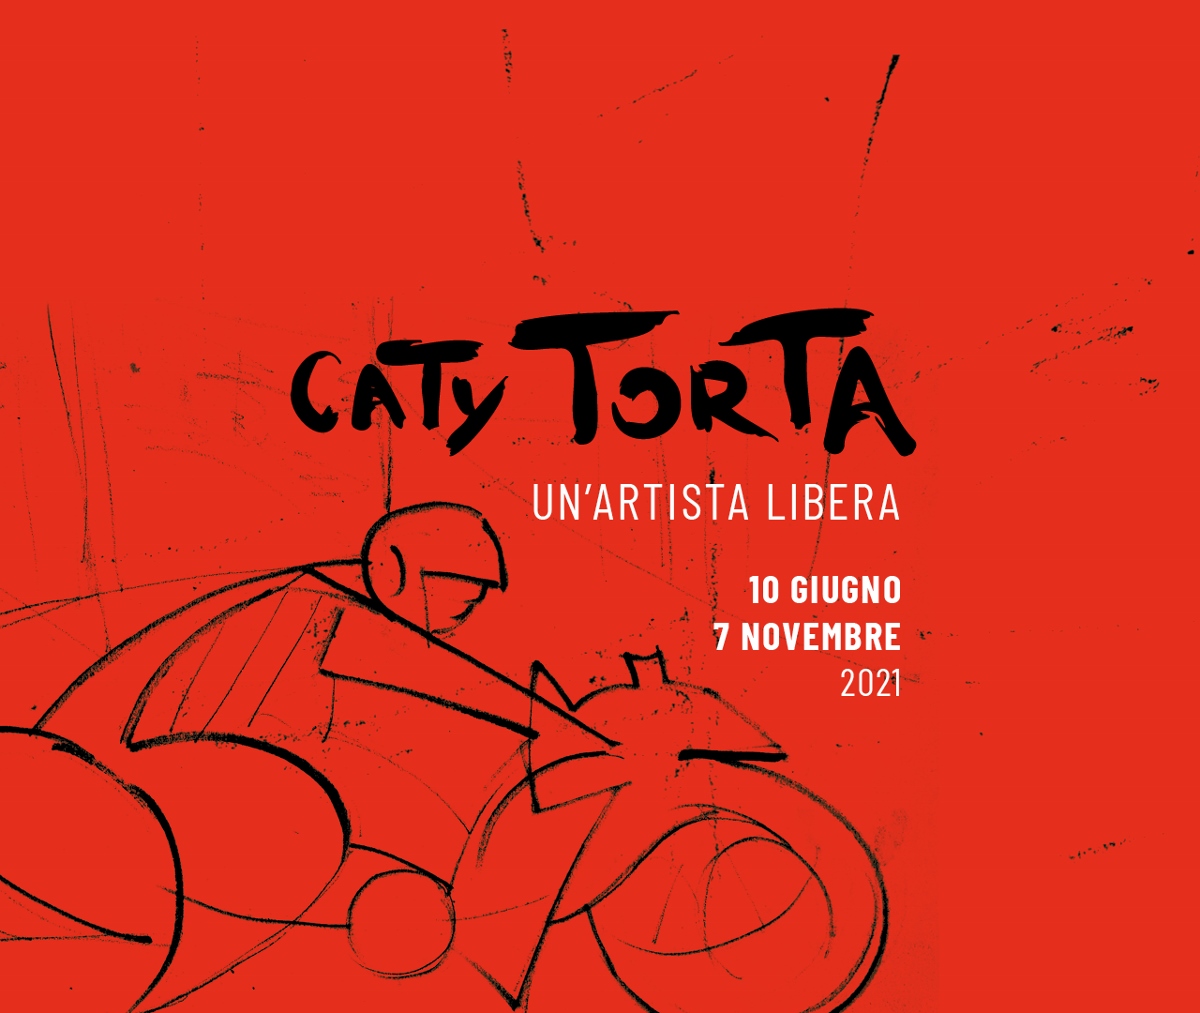 Caty Torta – Un’artista libera